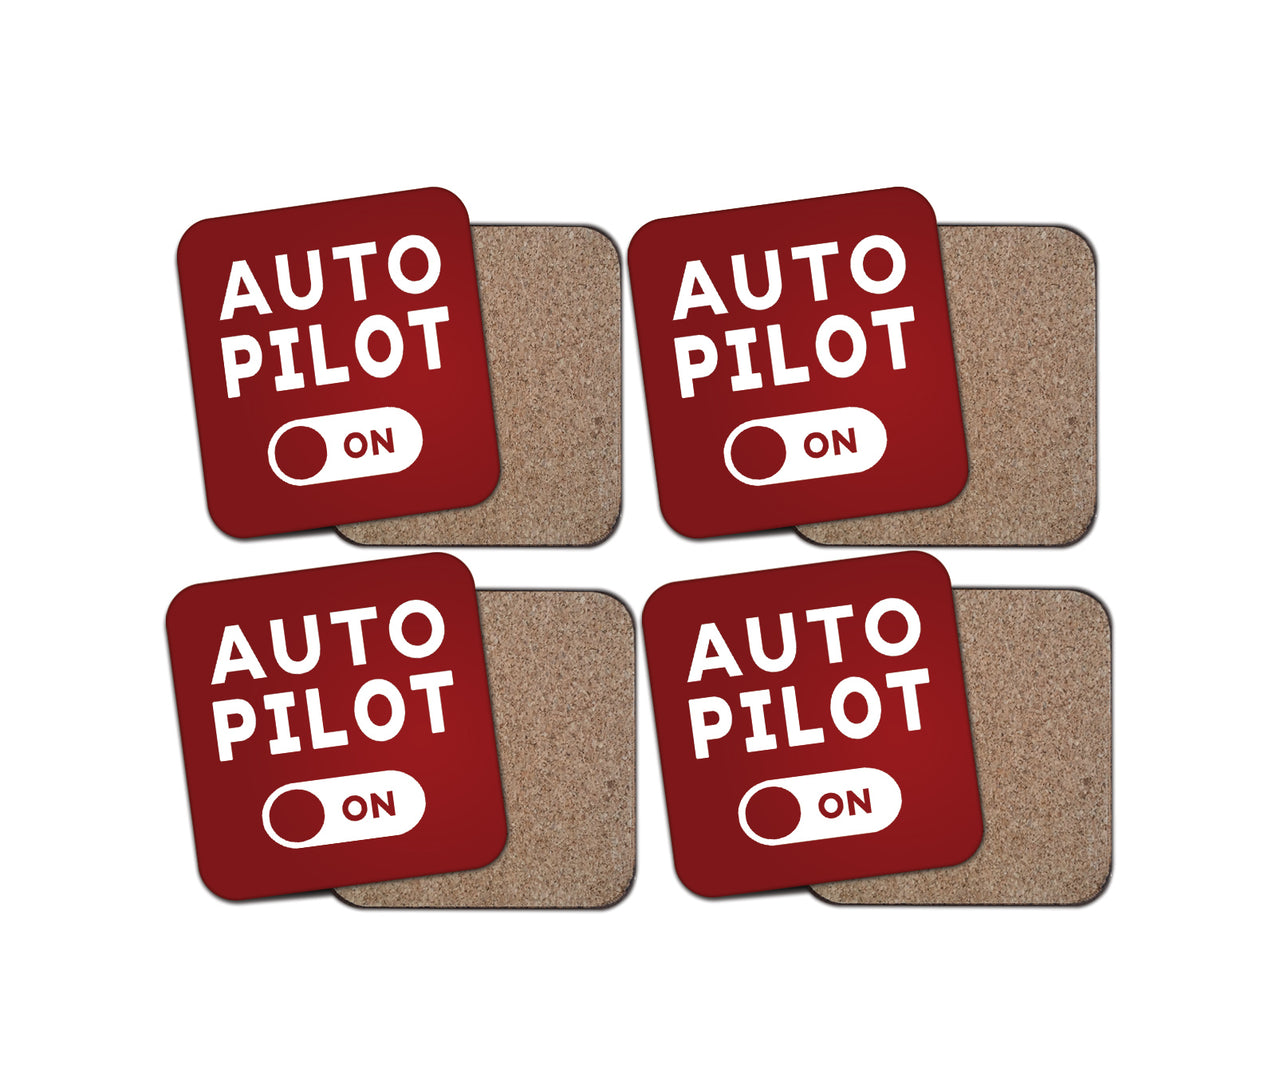 Auto Pilot ON Designed Coasters